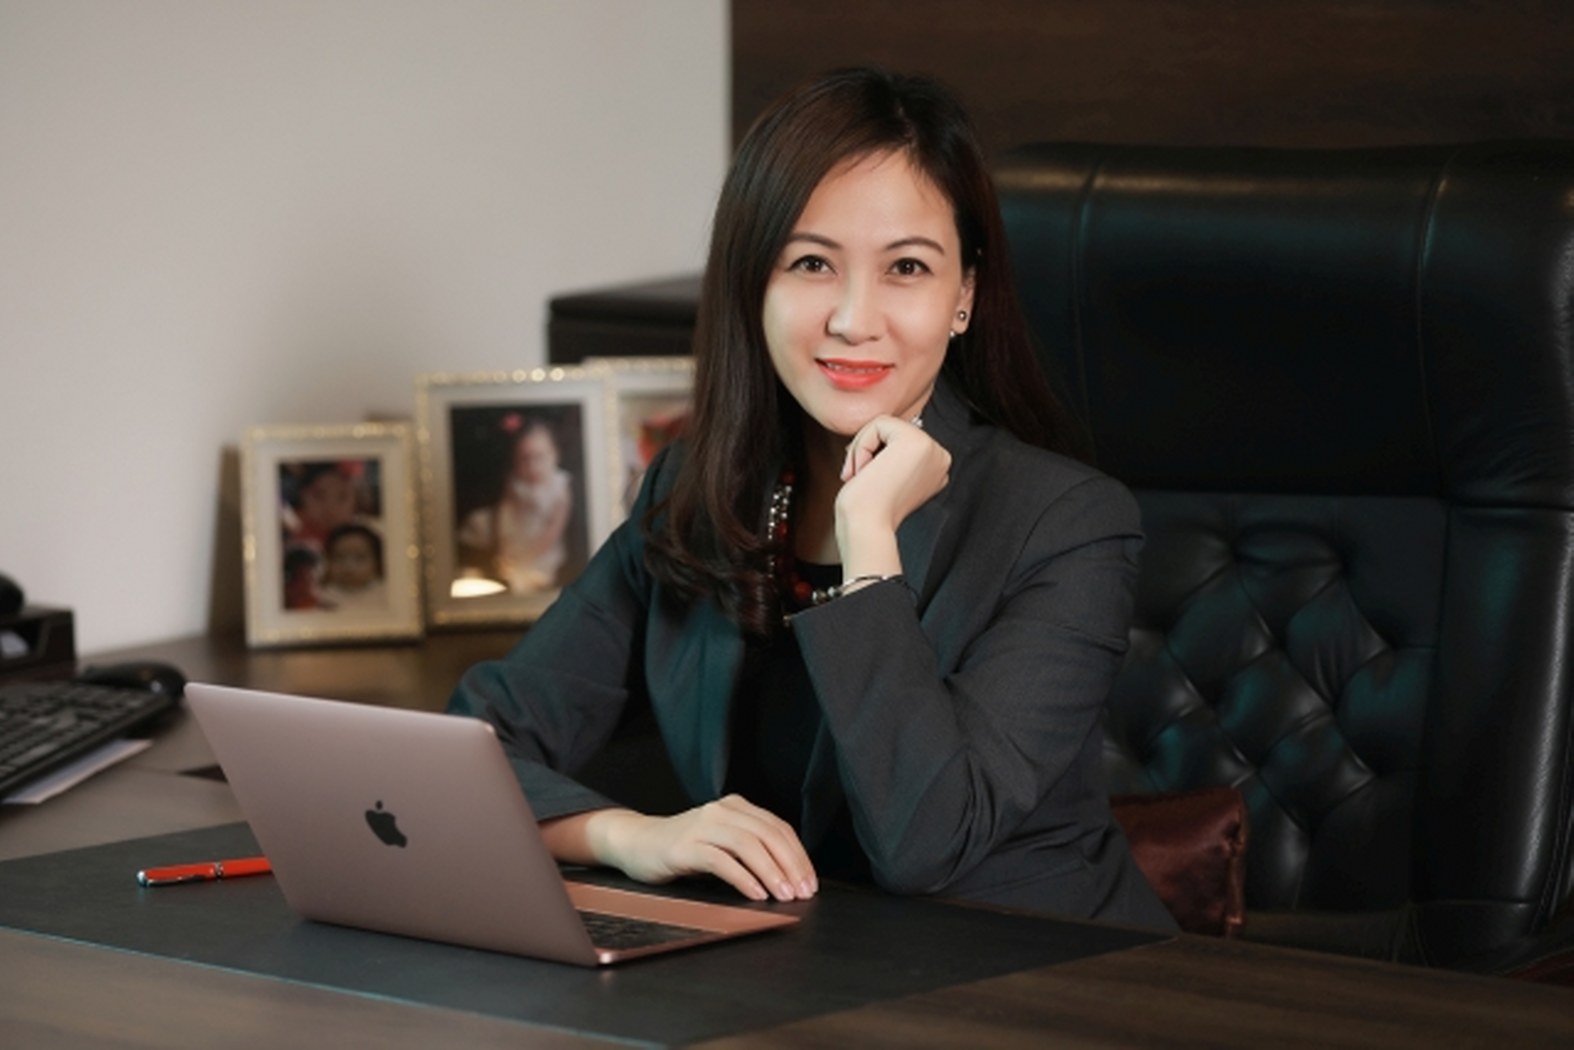 Trịnh Lan Phương, CEO BiboMart: “Tiếc khi nhiều chủ doanh nghiệp không còn tinh thần khởi nghiệp như anh Phạm Nhật Vượng